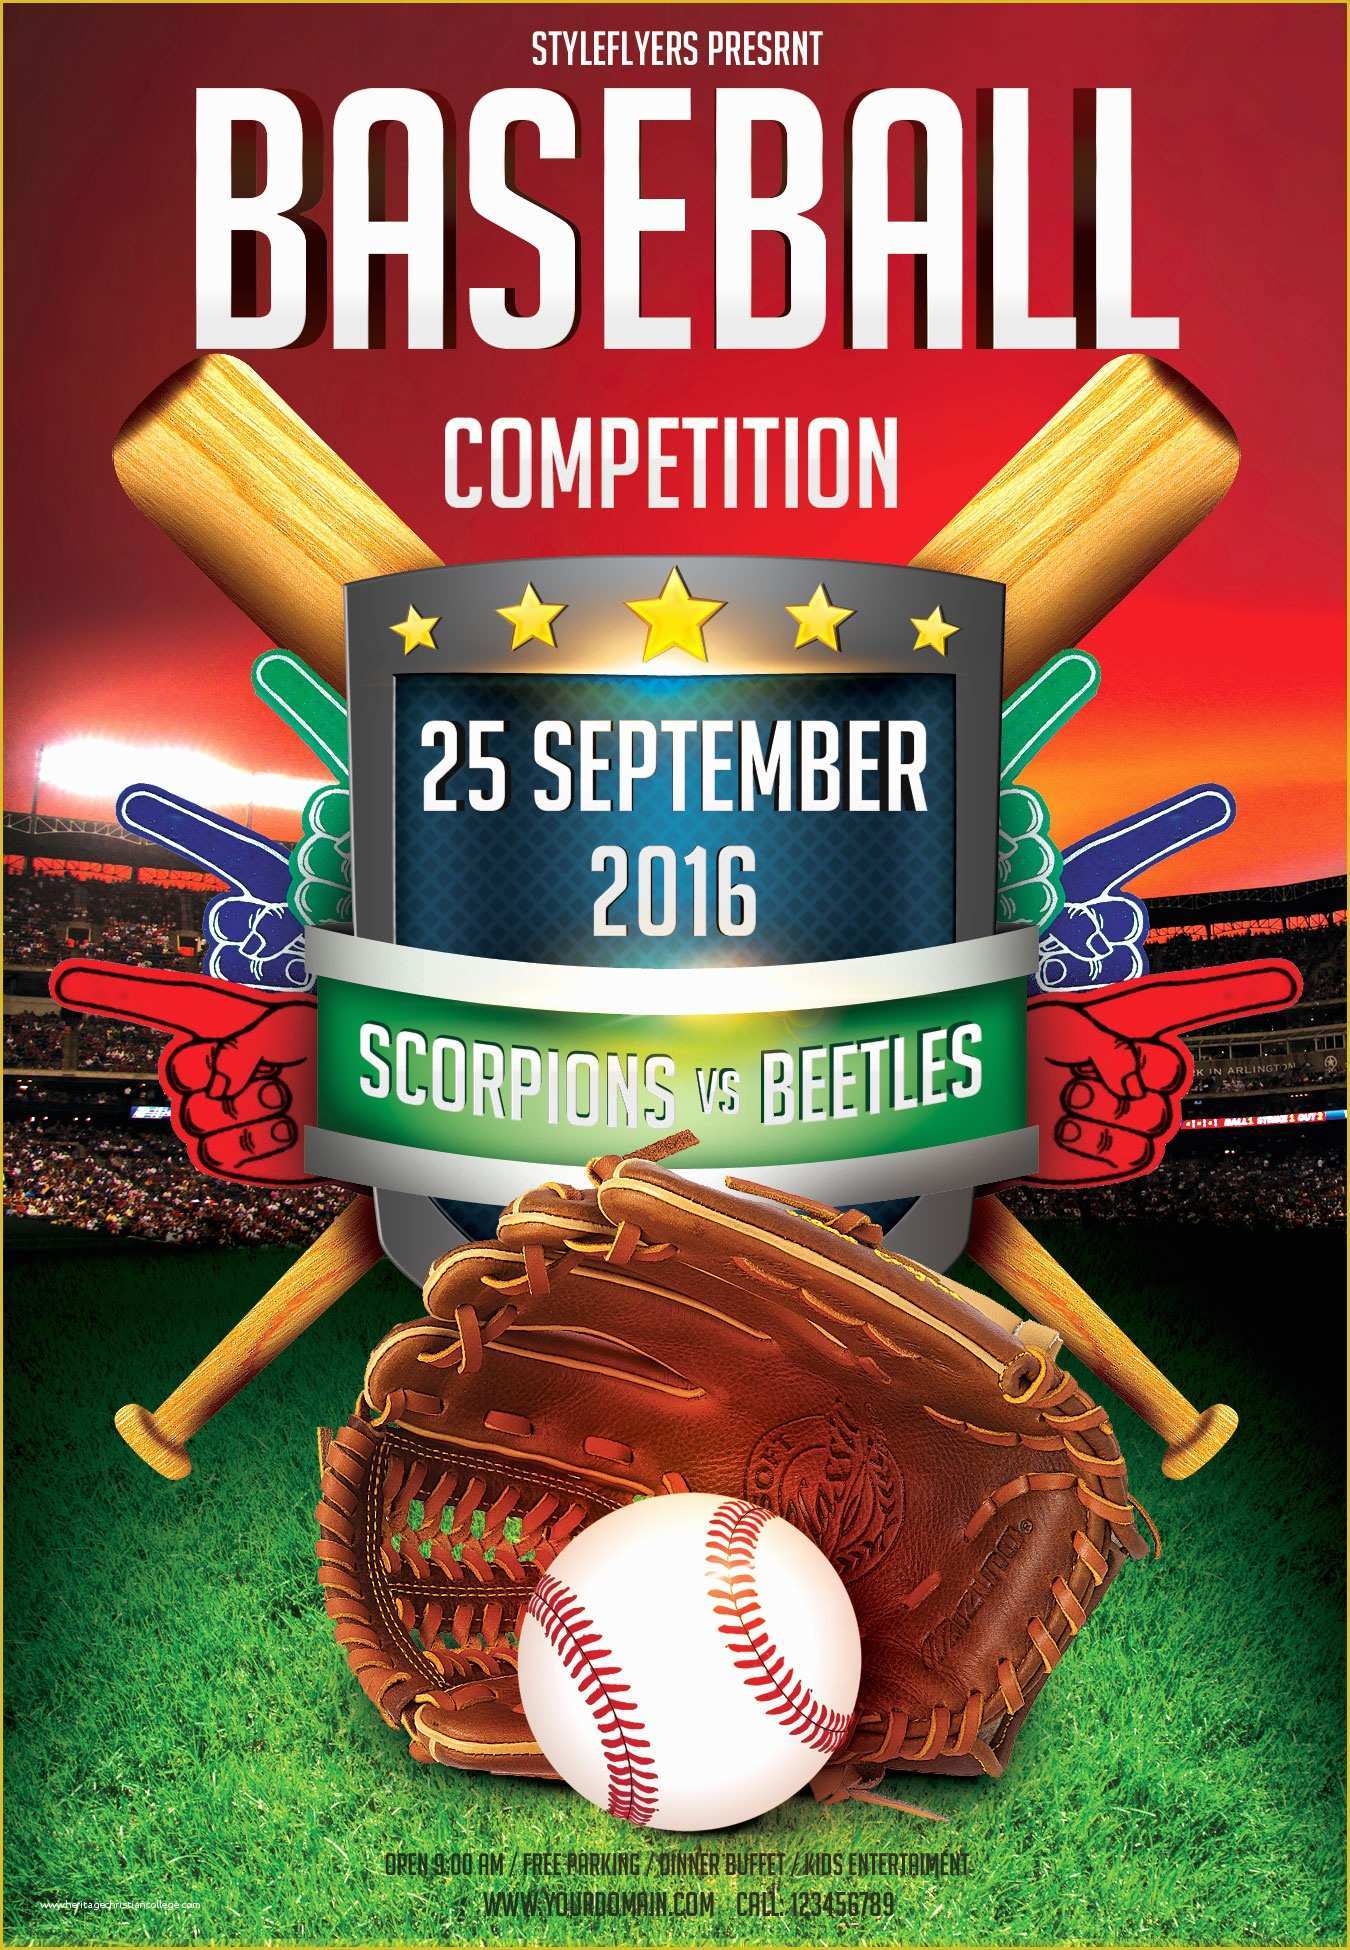 free-baseball-tournament-flyer-template-of-baseball-fundraiser-flyer